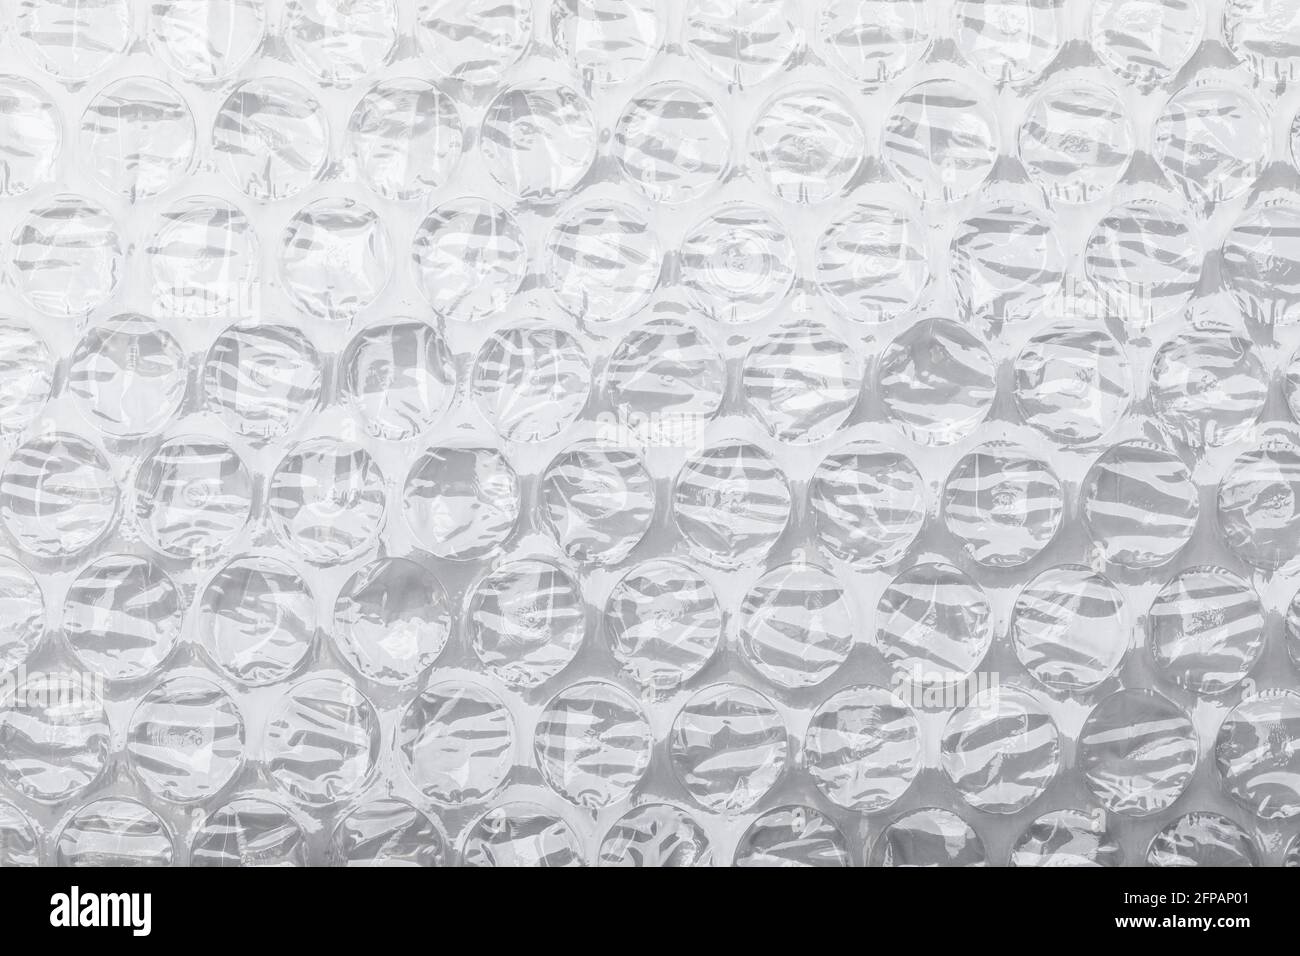 Luftpolsterfolie biegsames, transparentes Luftpolstermaterial aus  Kunststoff auf Weiß Hintergrund Stockfotografie - Alamy